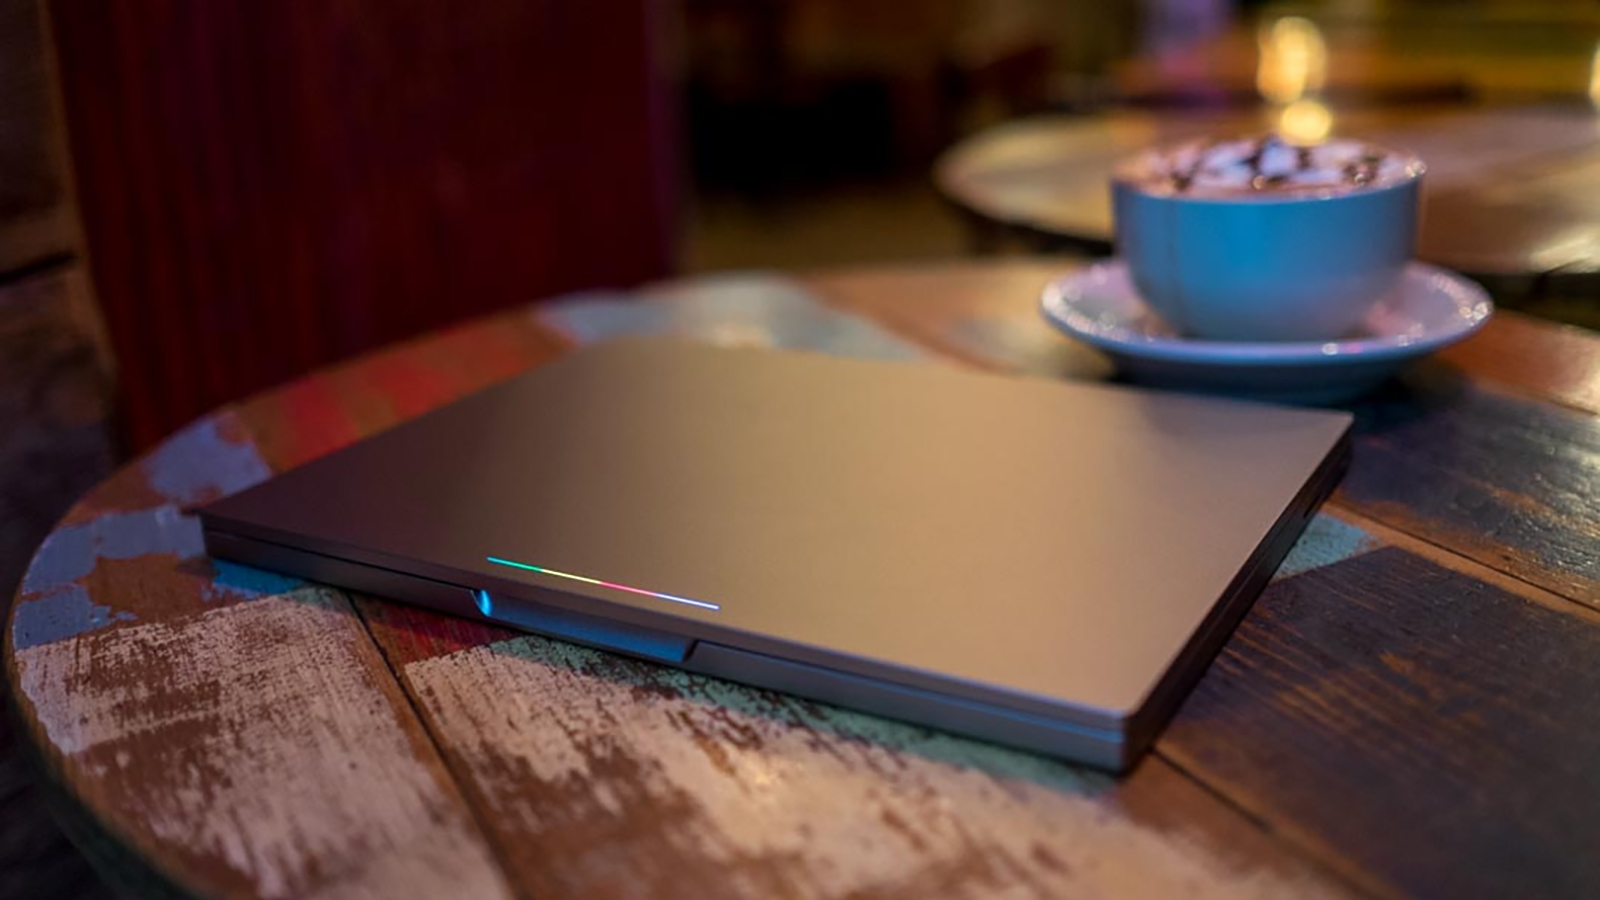 Chromebook Pixel 2015 ir slēgts uz galda.